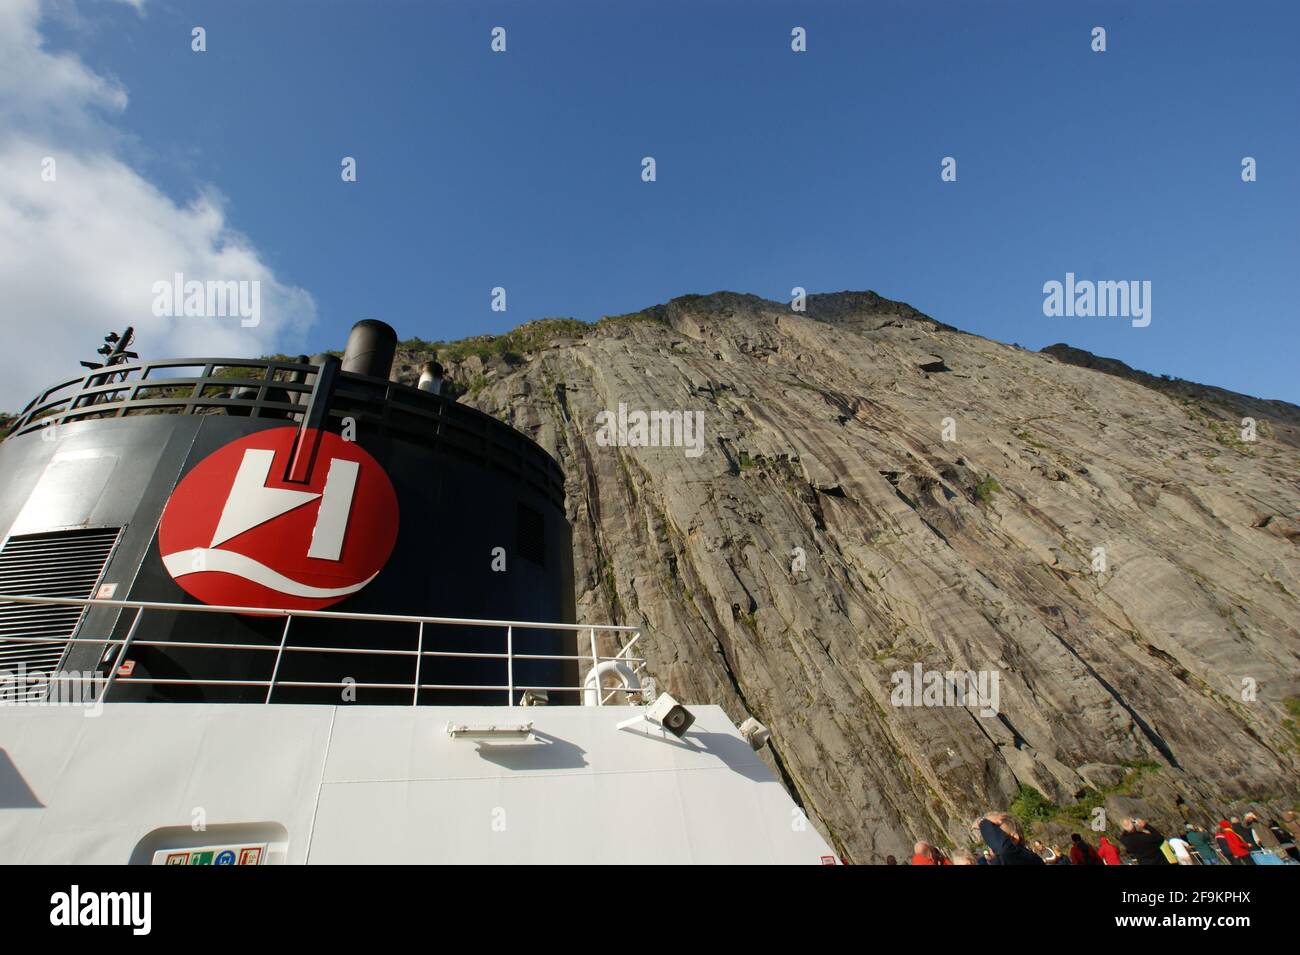 Nave da crociera Hurtigruten incurvata dalle enormi scogliere dello stretto Trollfjord che è stato introdotto attraverso una stretta apertura appena abbastanza larga da adattarsi. Foto Stock